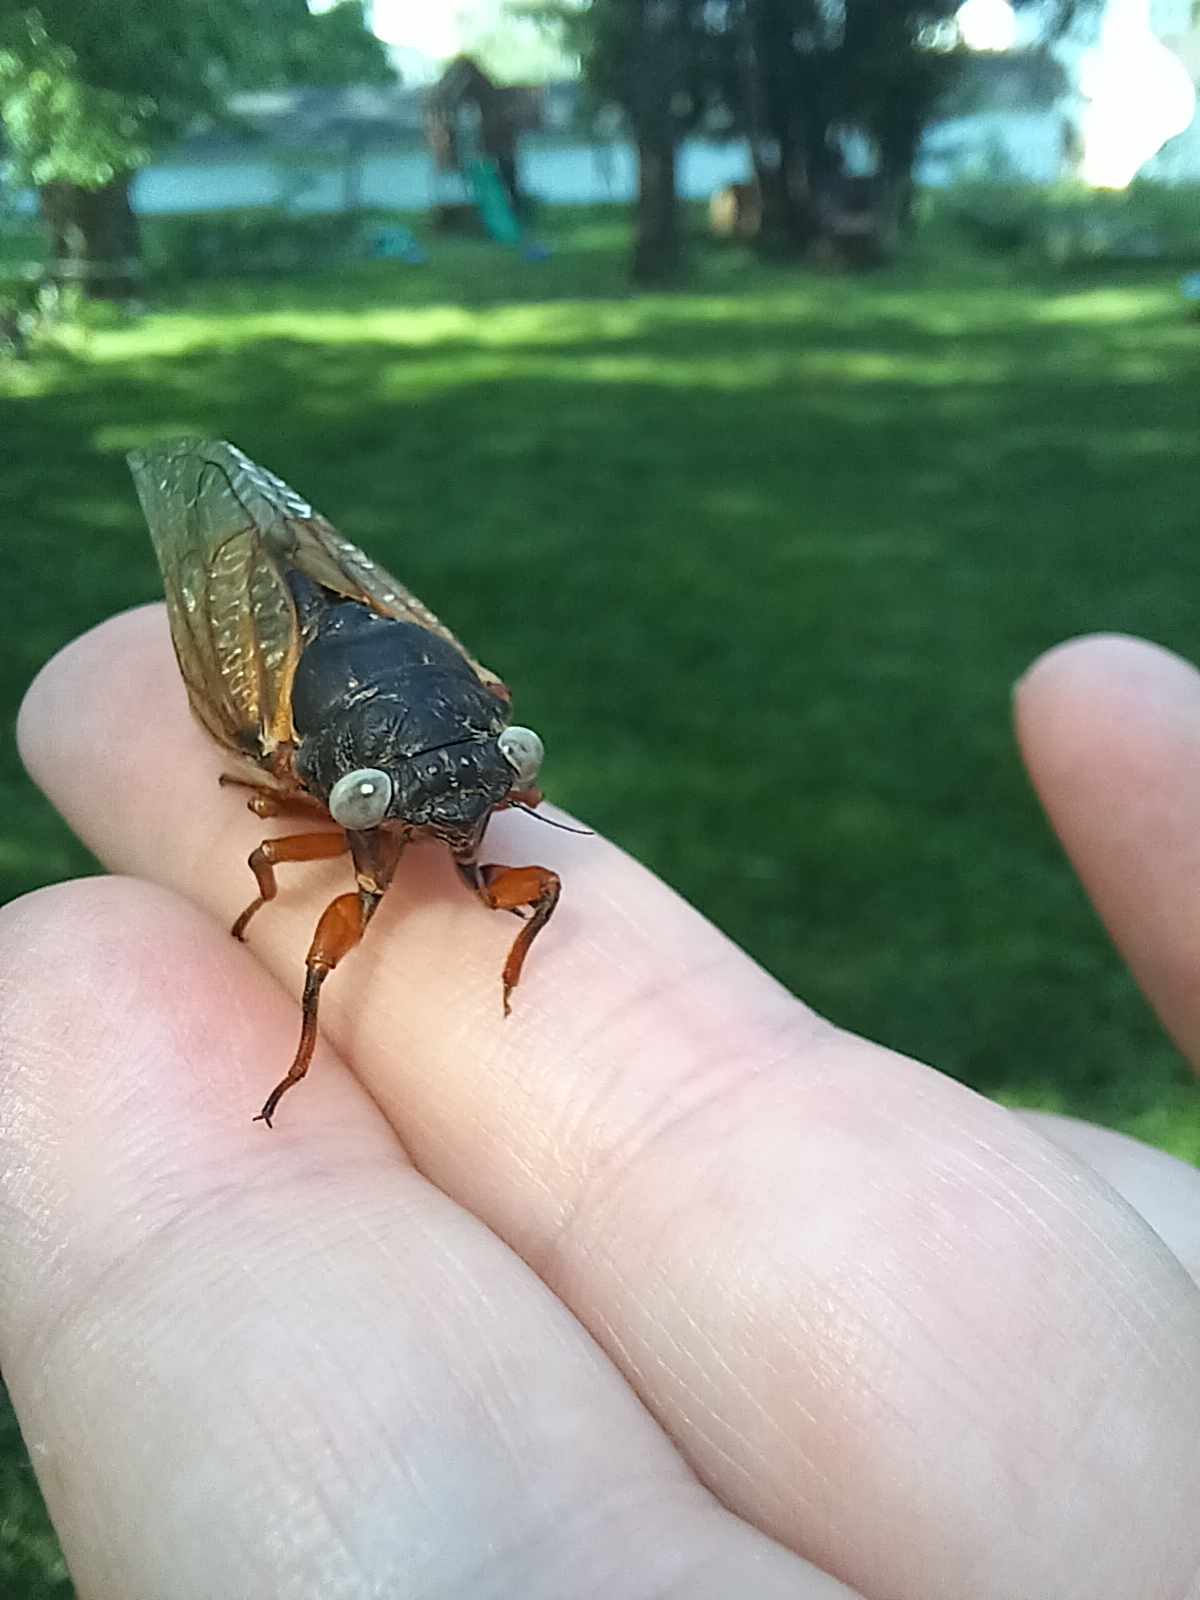 a cicada with blue eyes